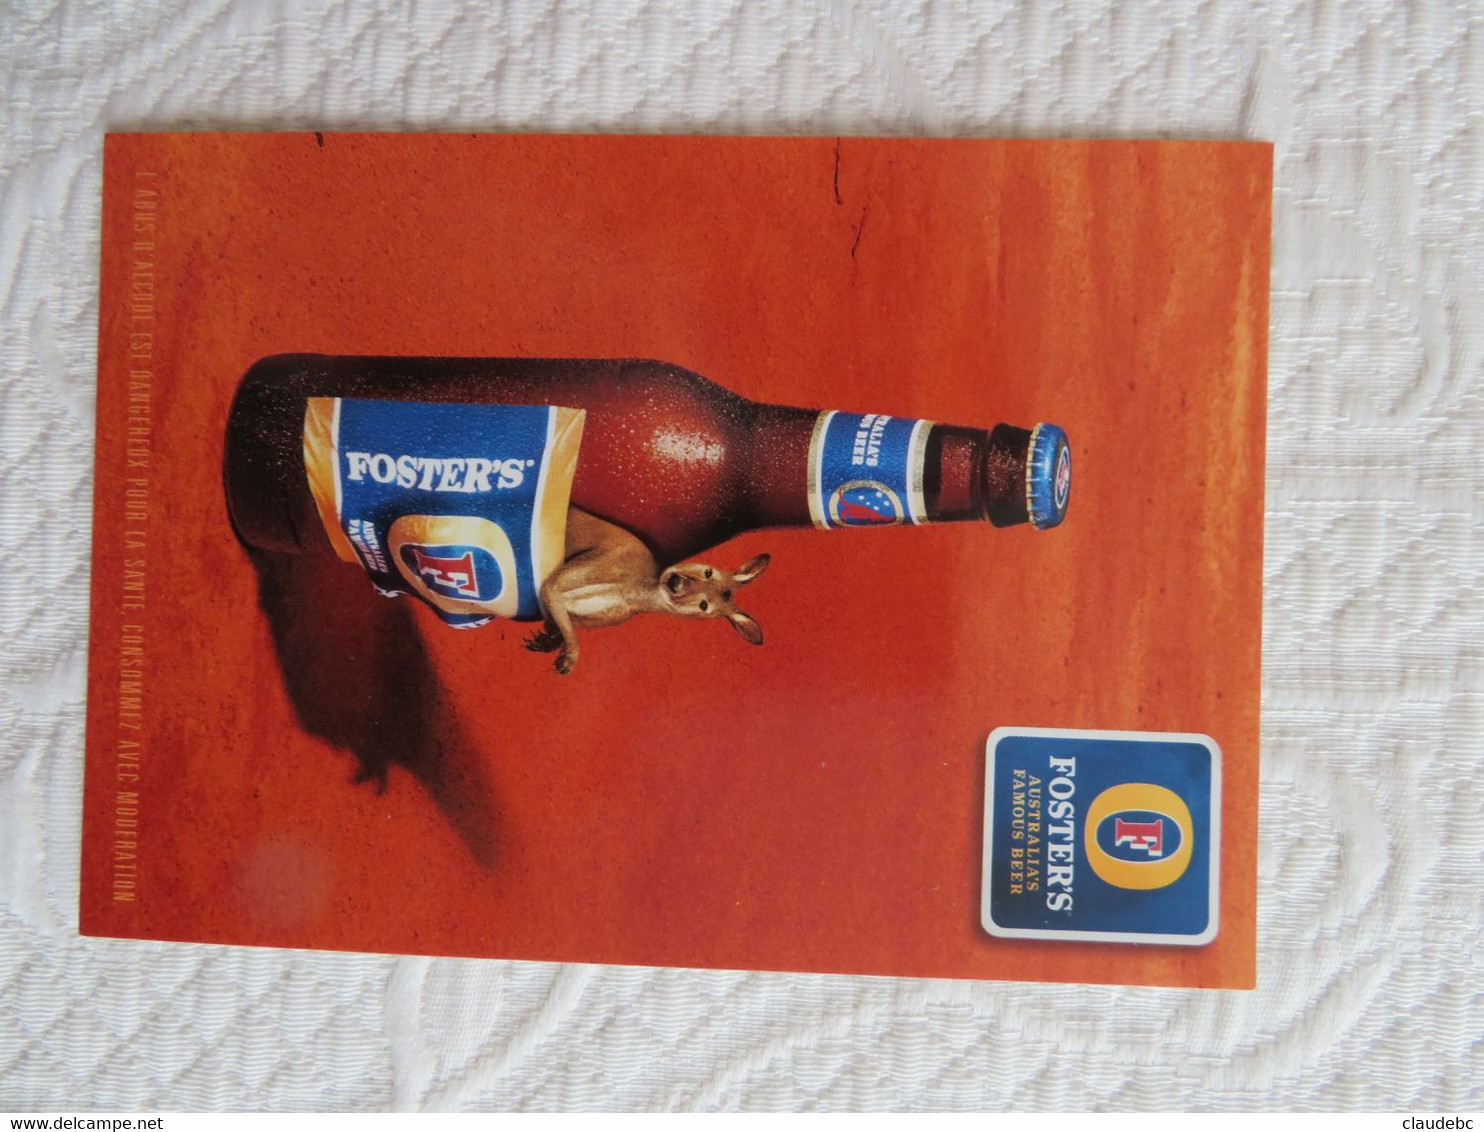 FOSTER'S AUSTRALIA BEER KANGOUROU  Publicité  Carte Postale - Posters